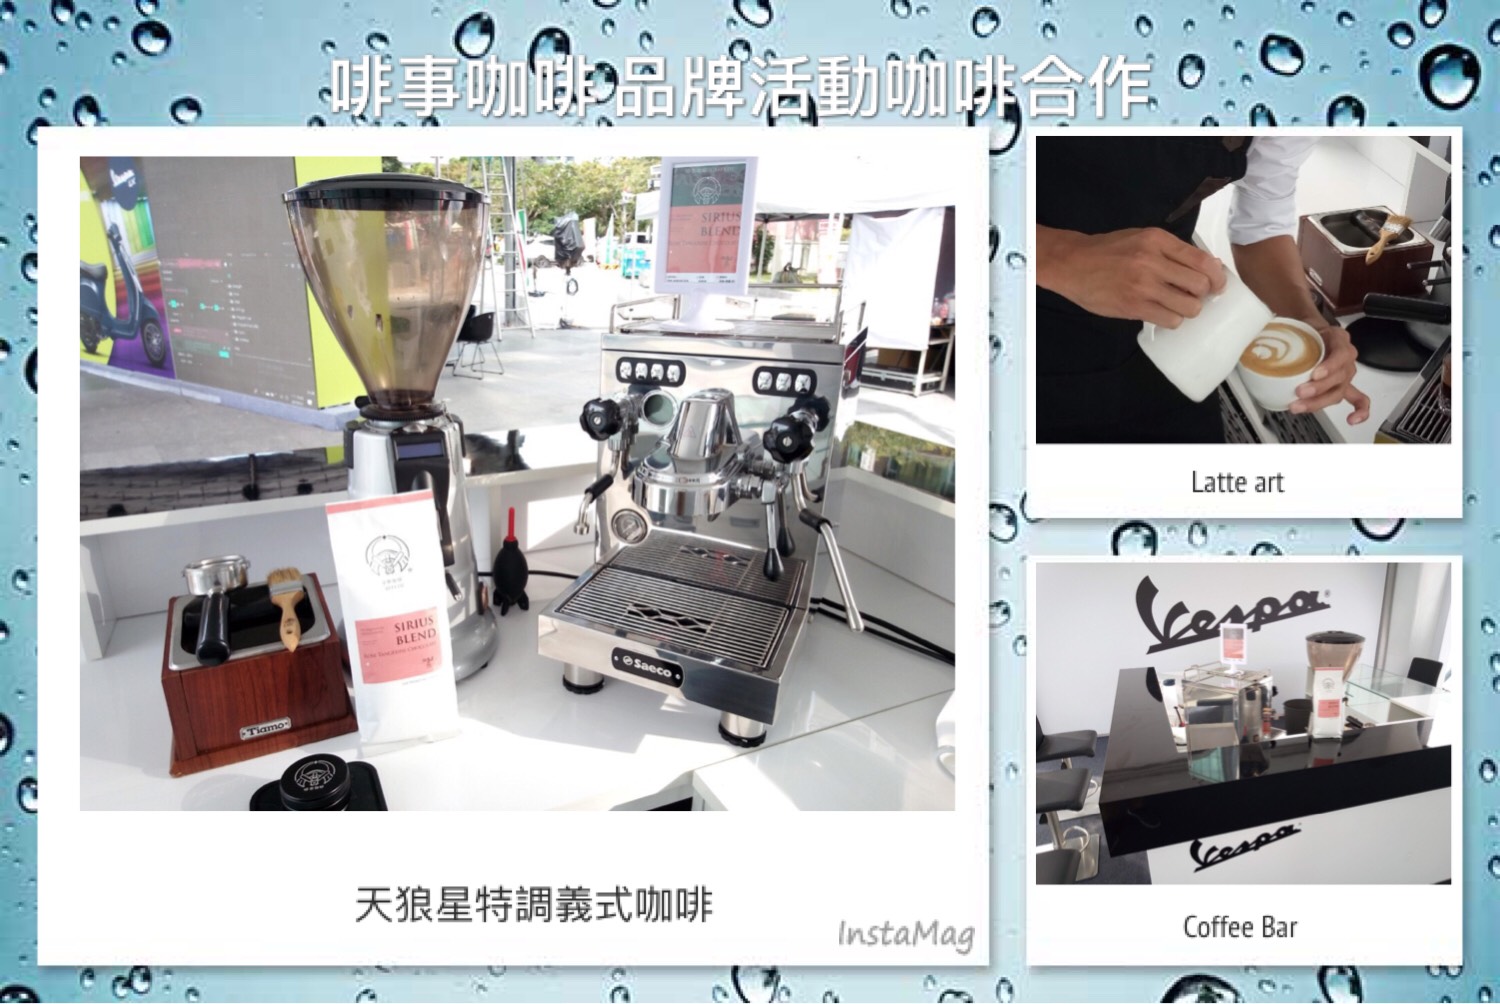 活動短期租借 假日咖啡活動Vespa 台南高雄 咖啡機 賣咖啡